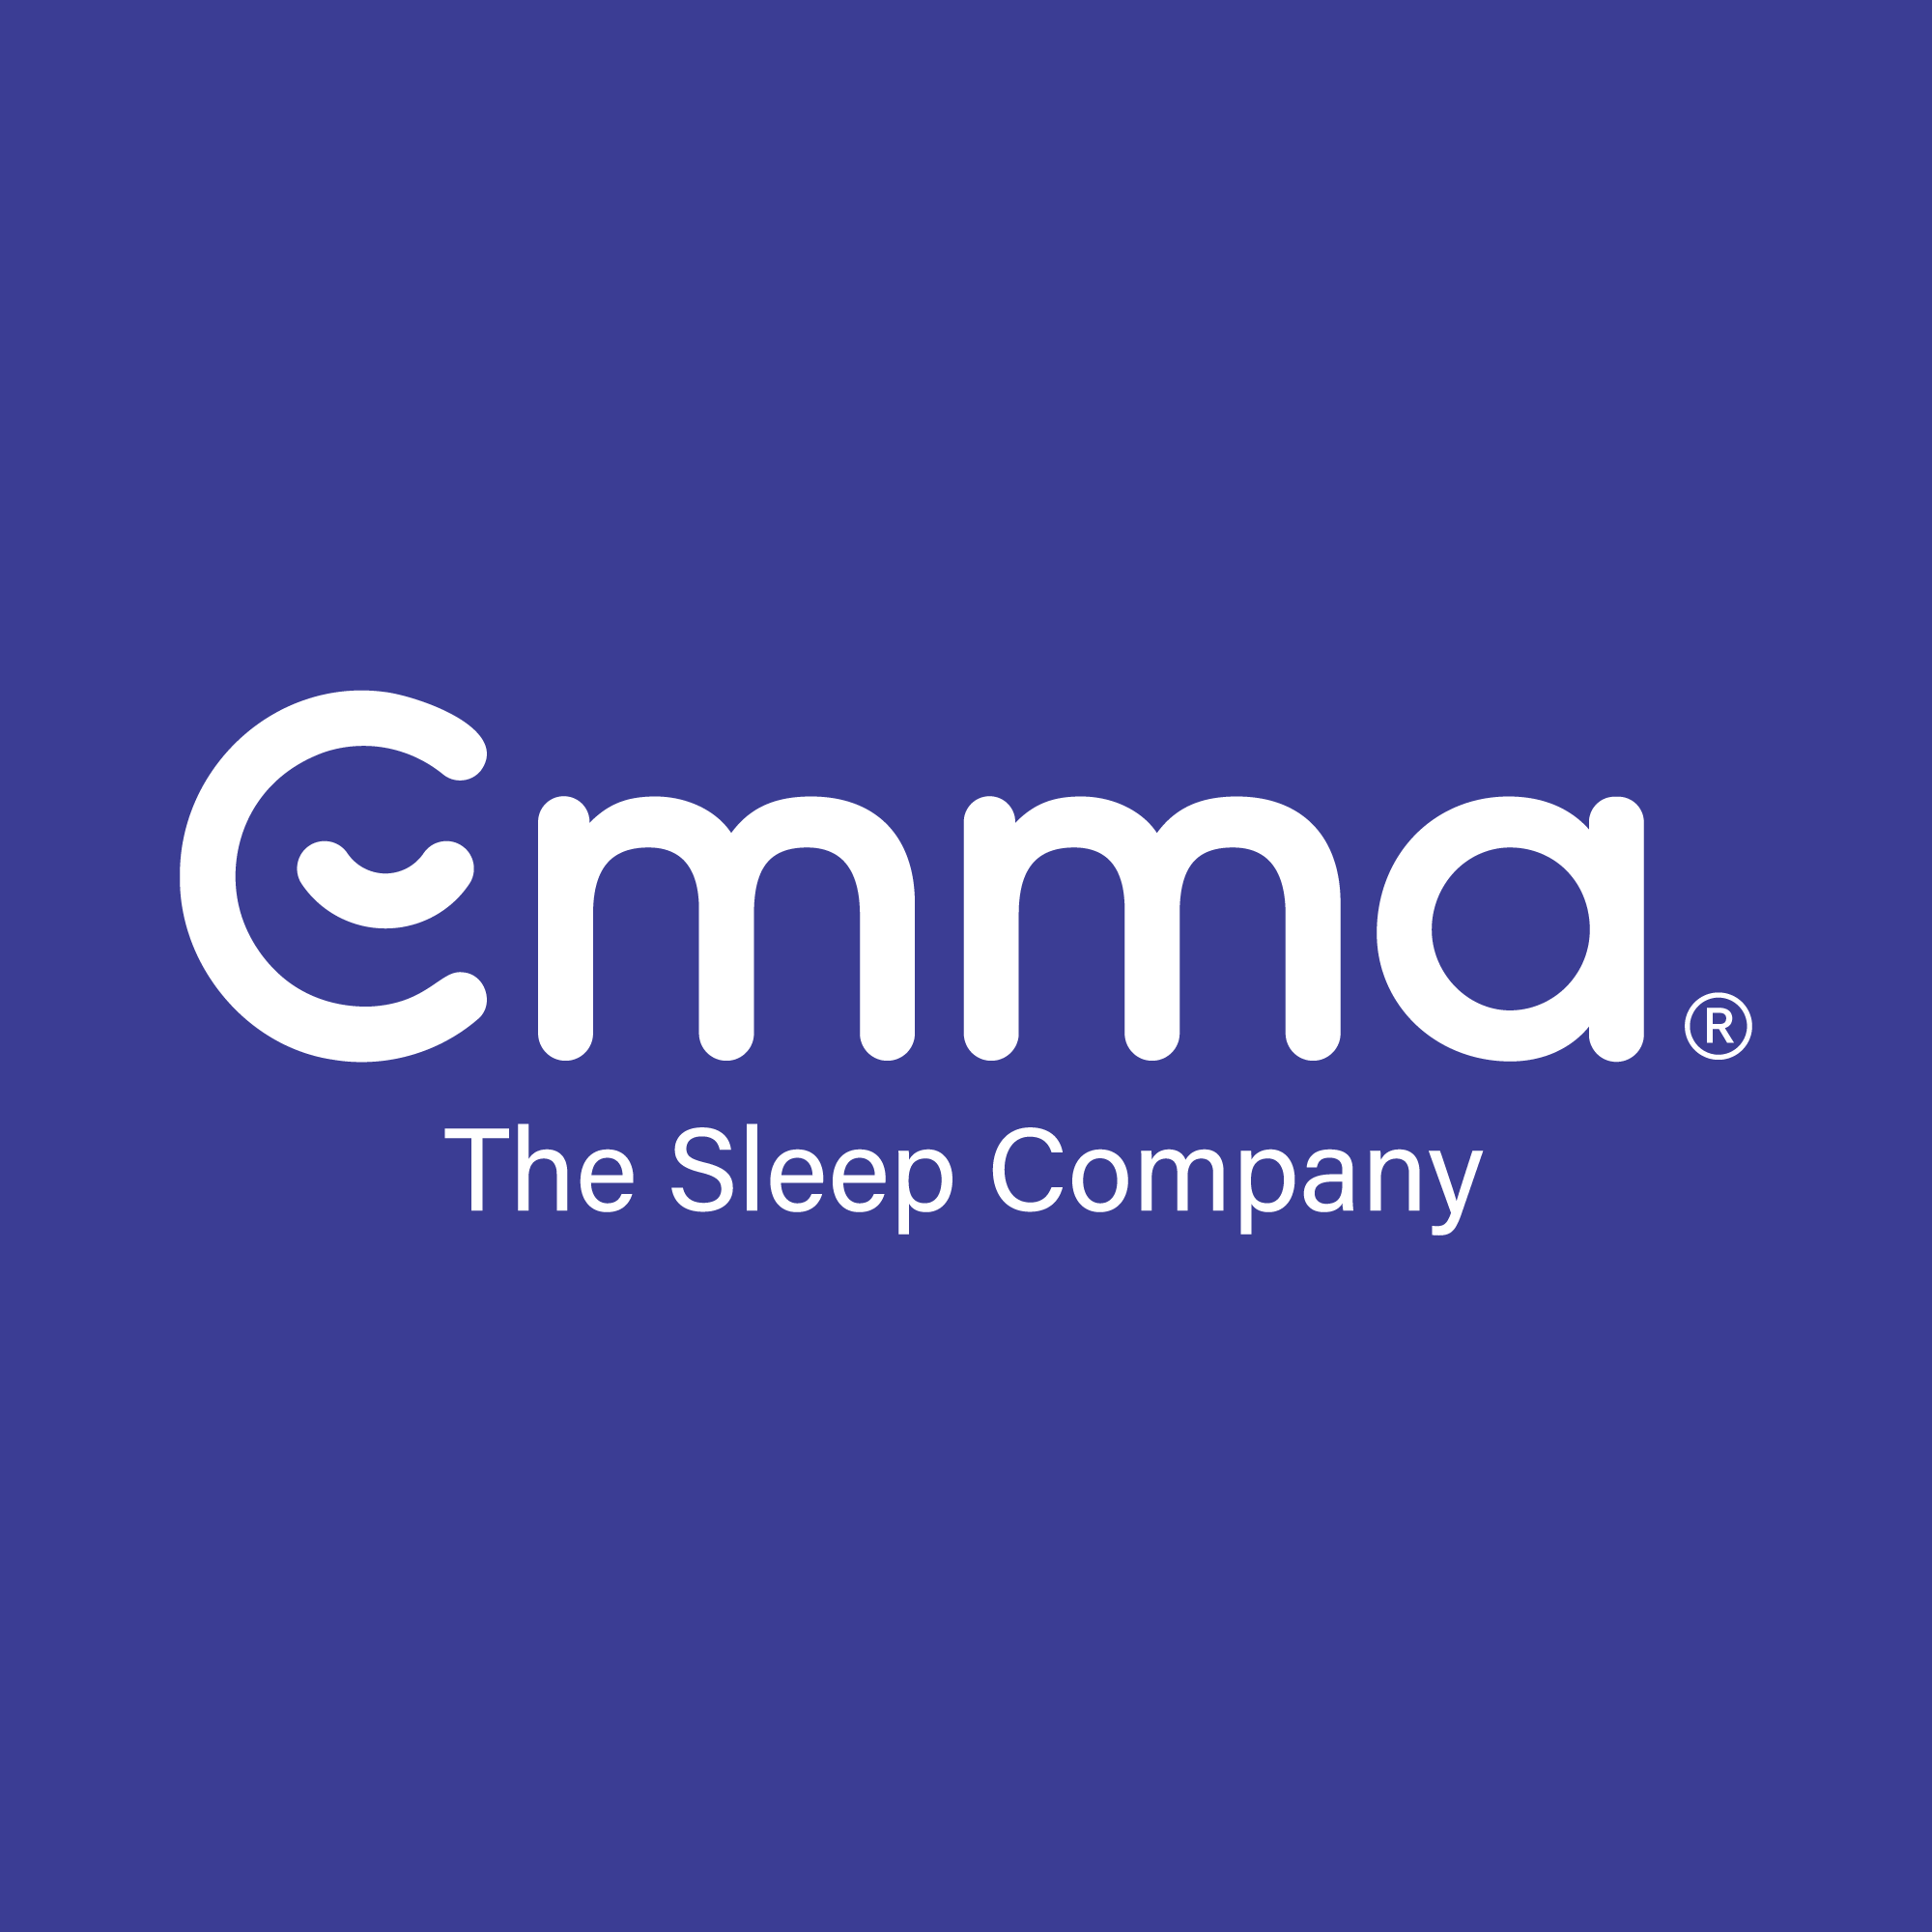 Emma - The Sleep Company Logo